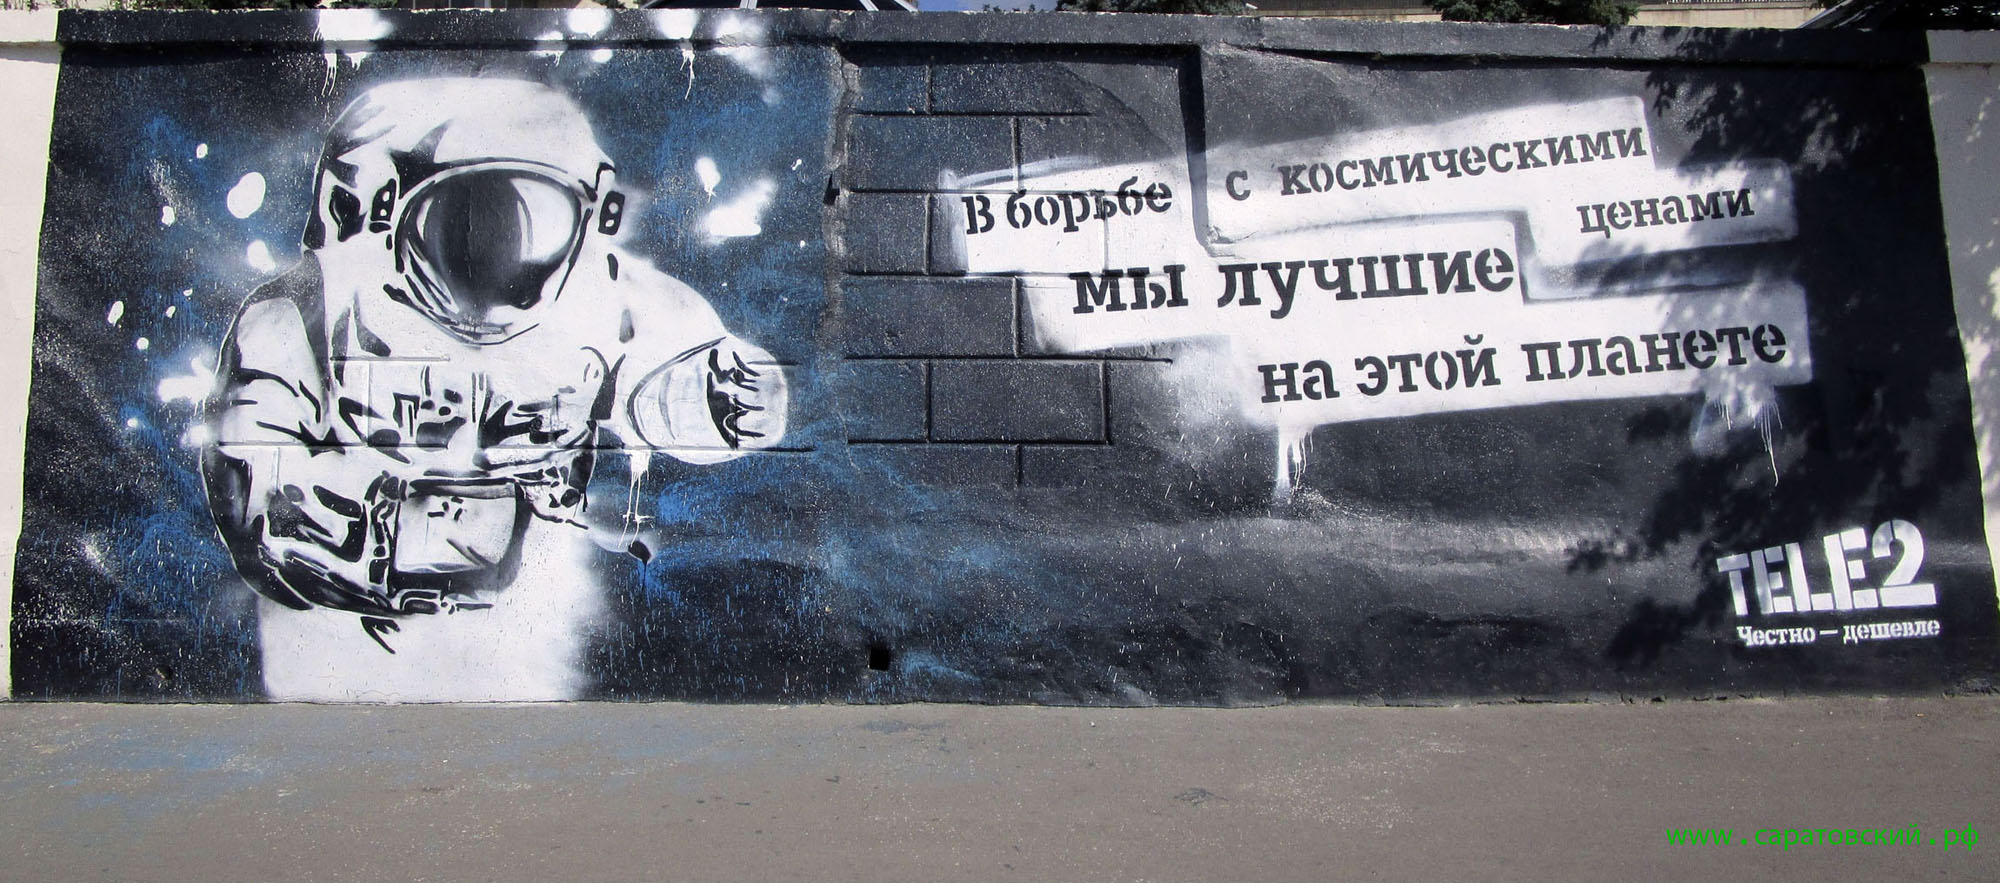 Saratov waterfront graffiti: a space race in Saratov Region, Russia